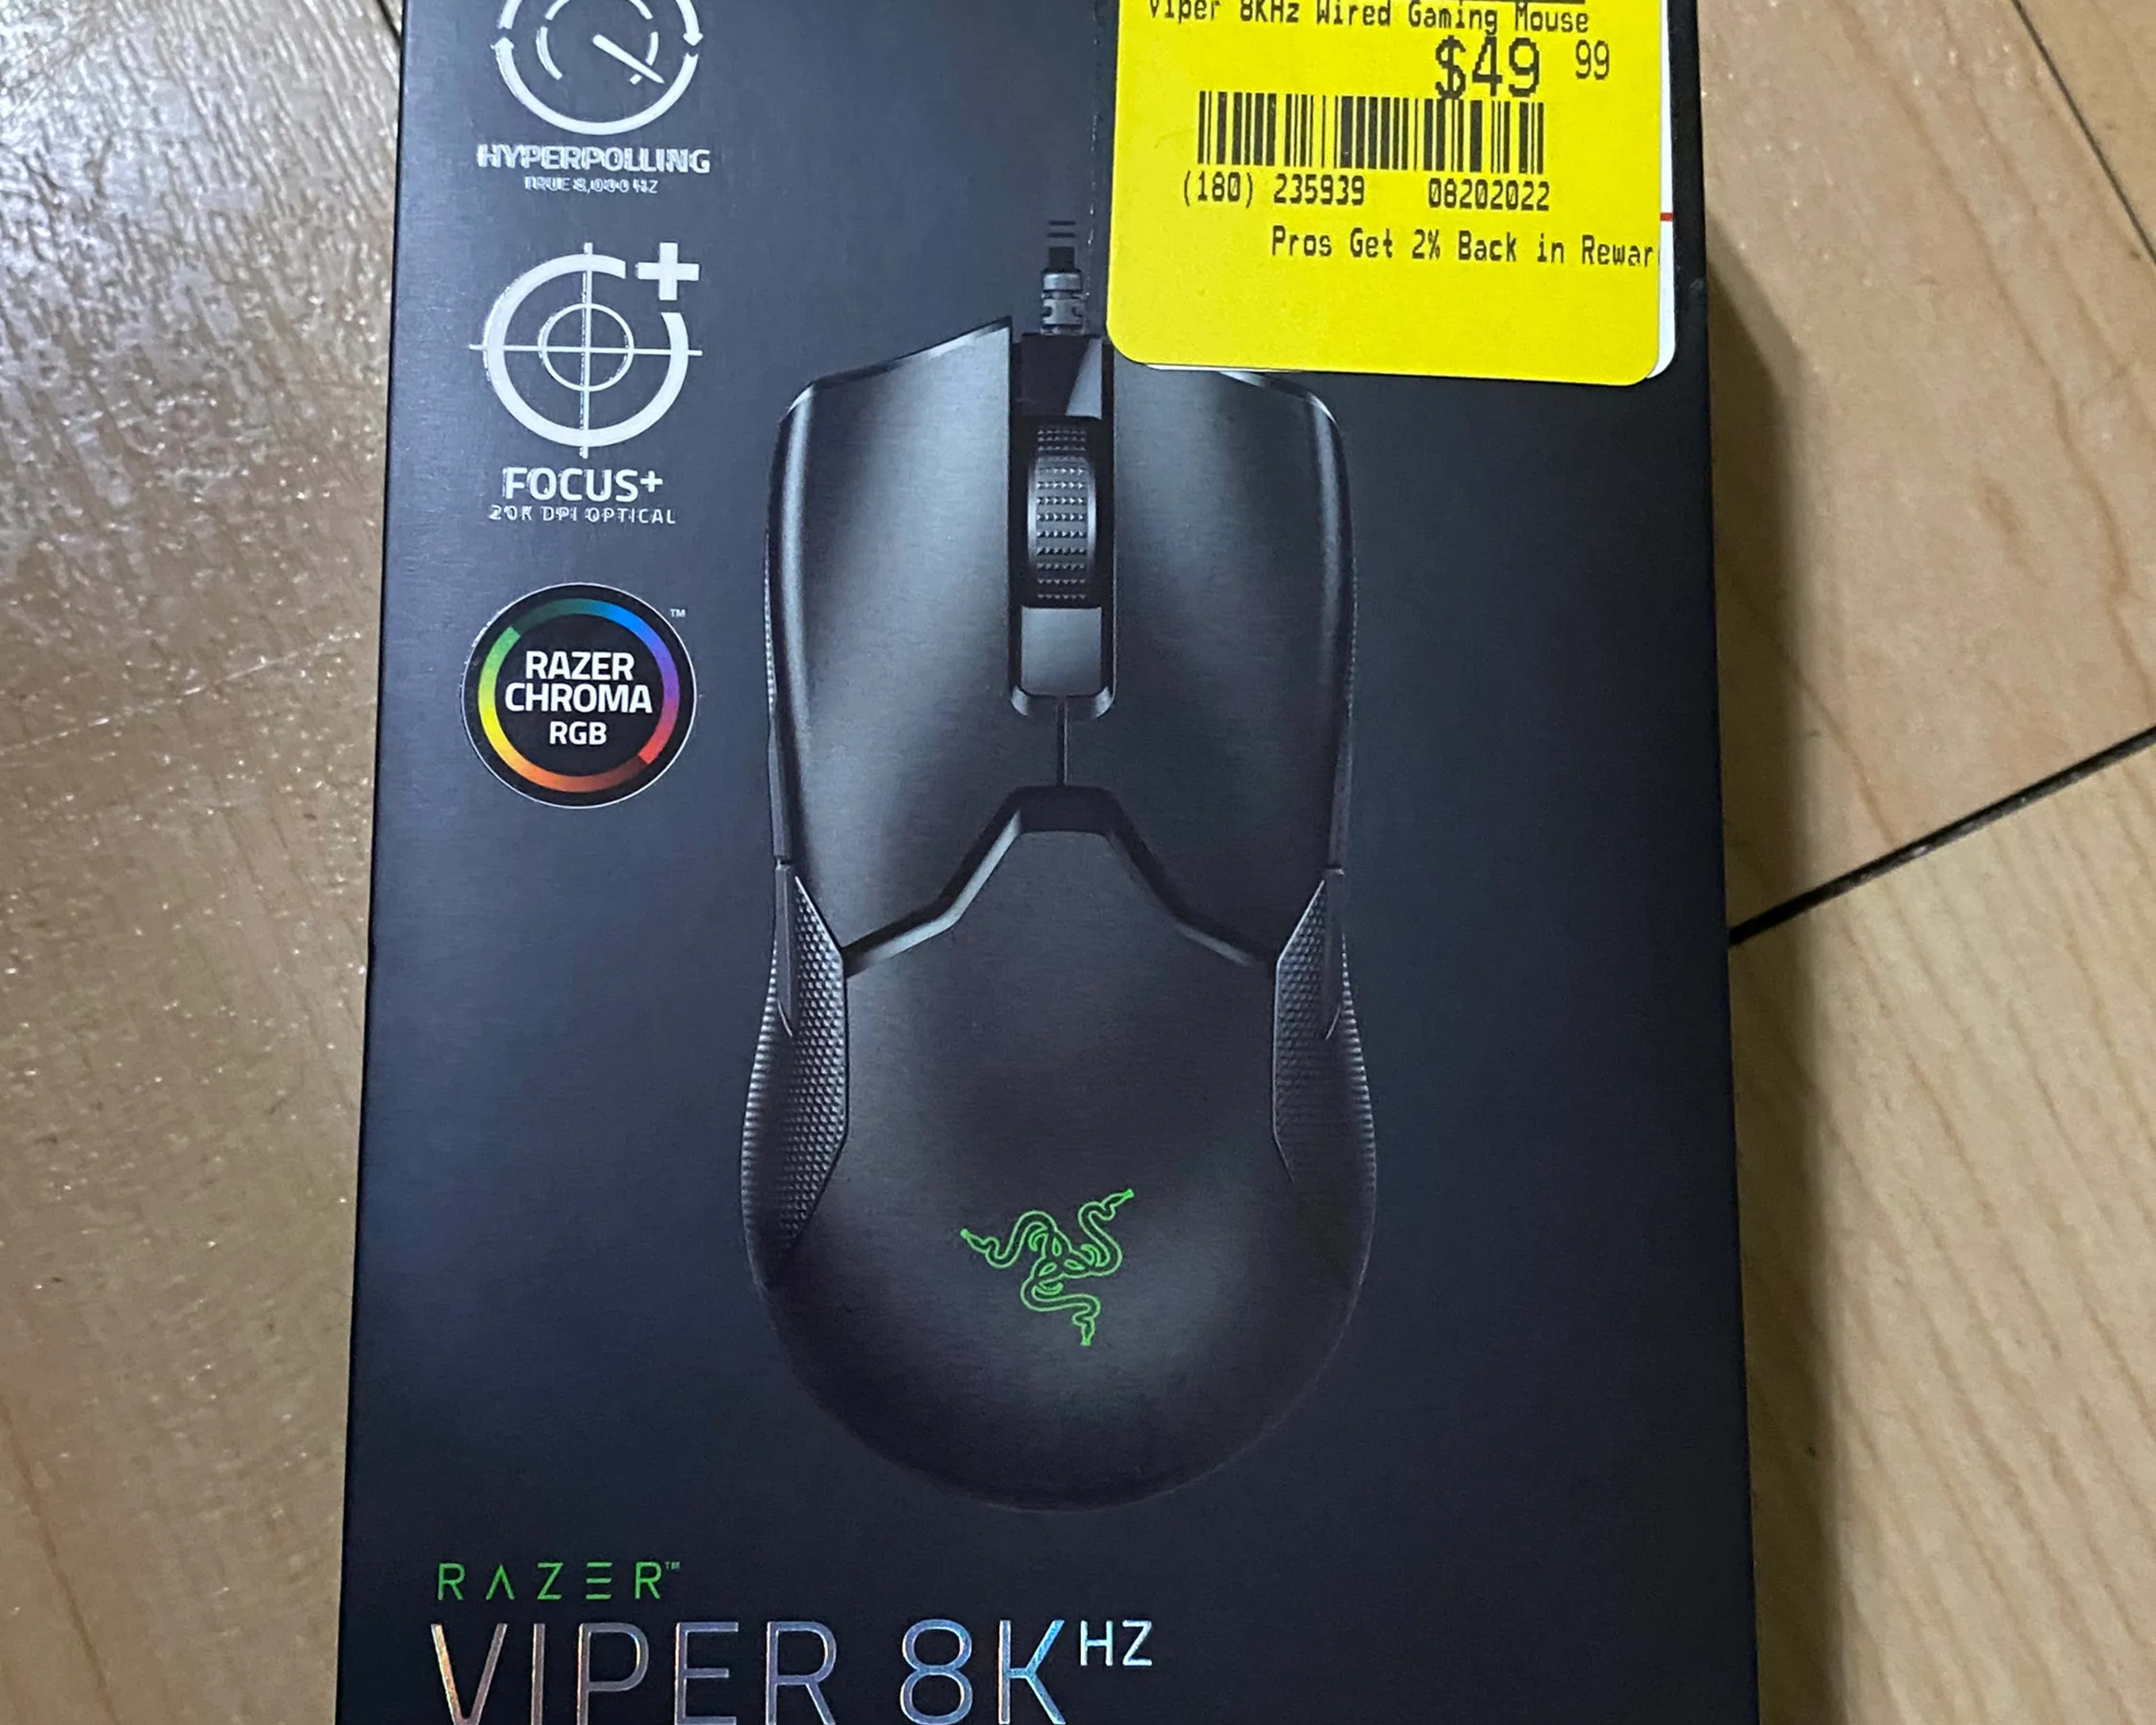 Razer Viper 8kHz Gaming Mouse